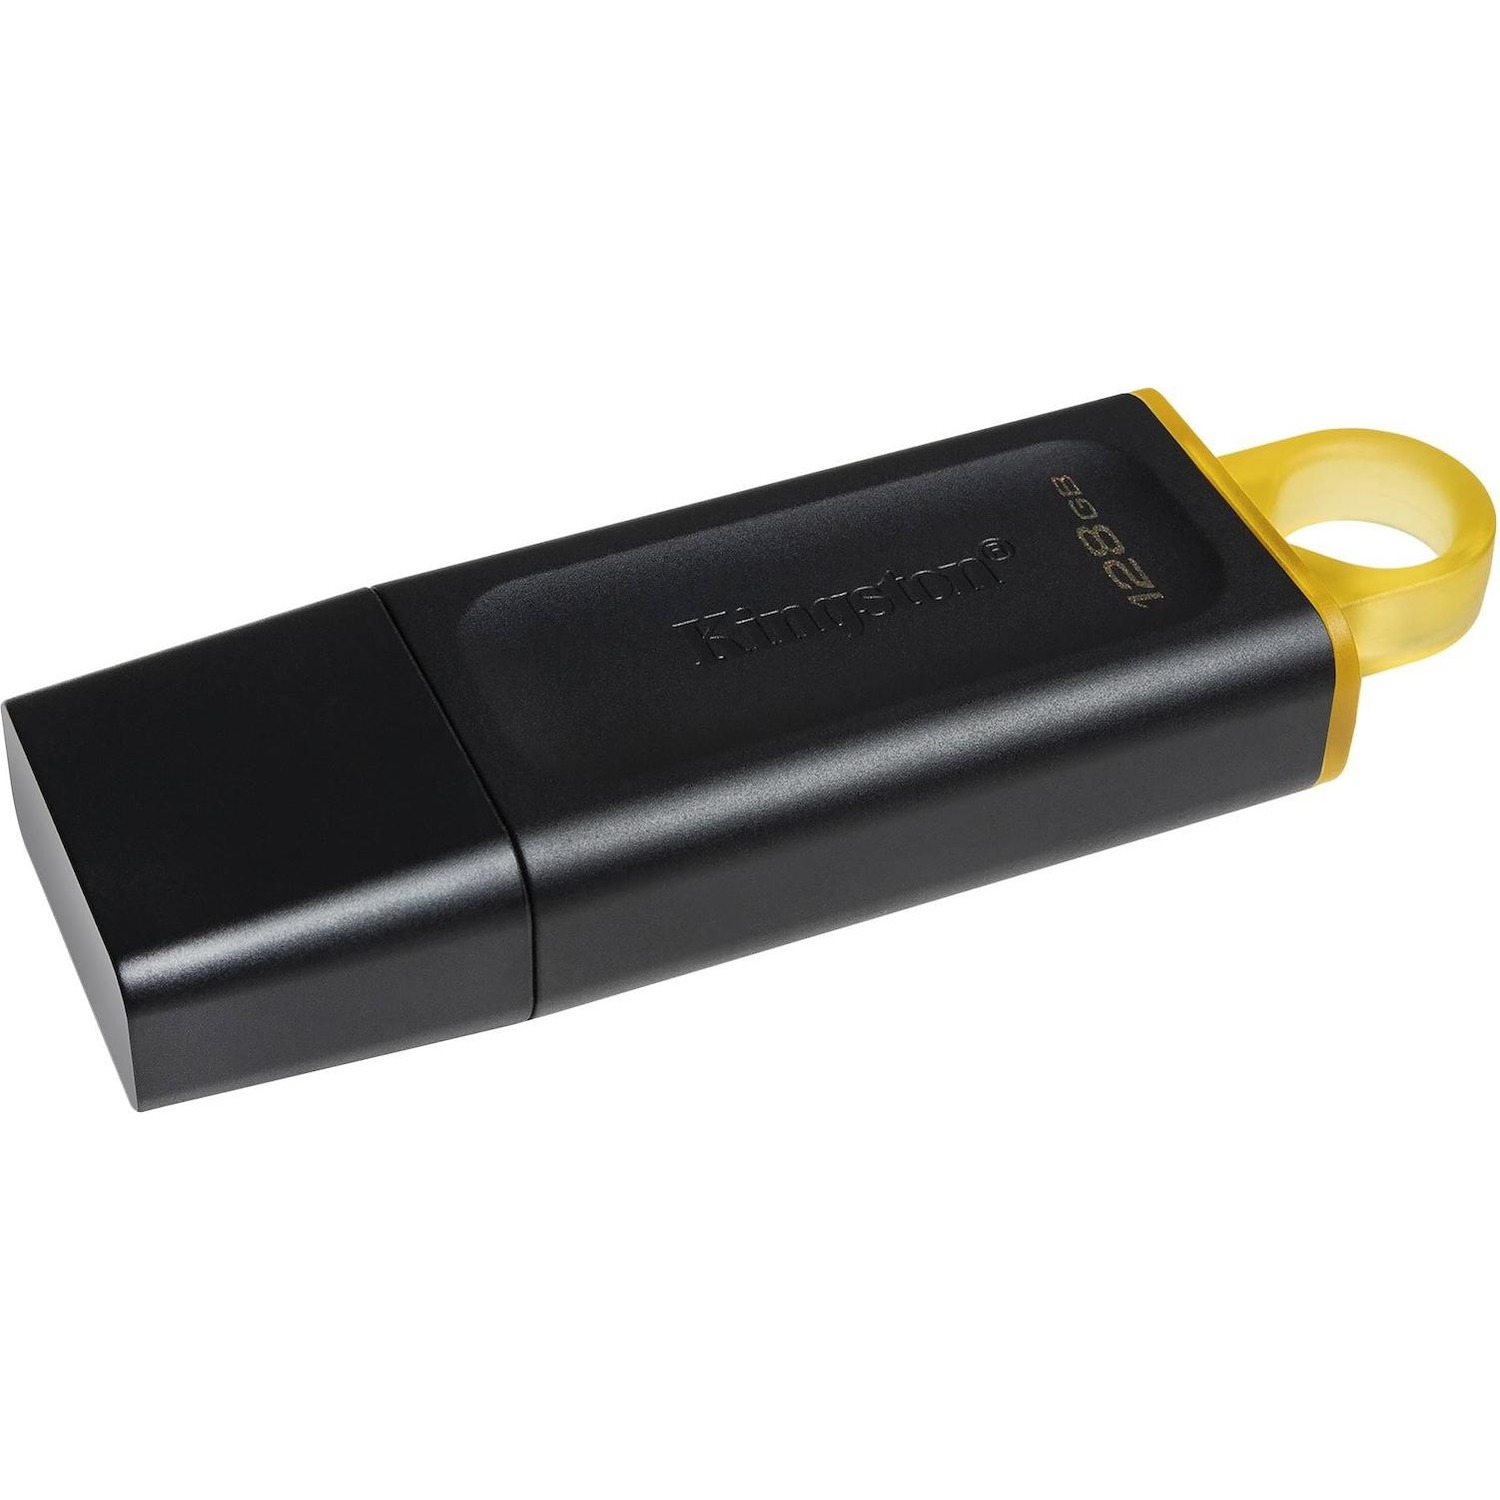 Immagine per Pen drive Kingston 128GB USB 3.2 da DIMOStore